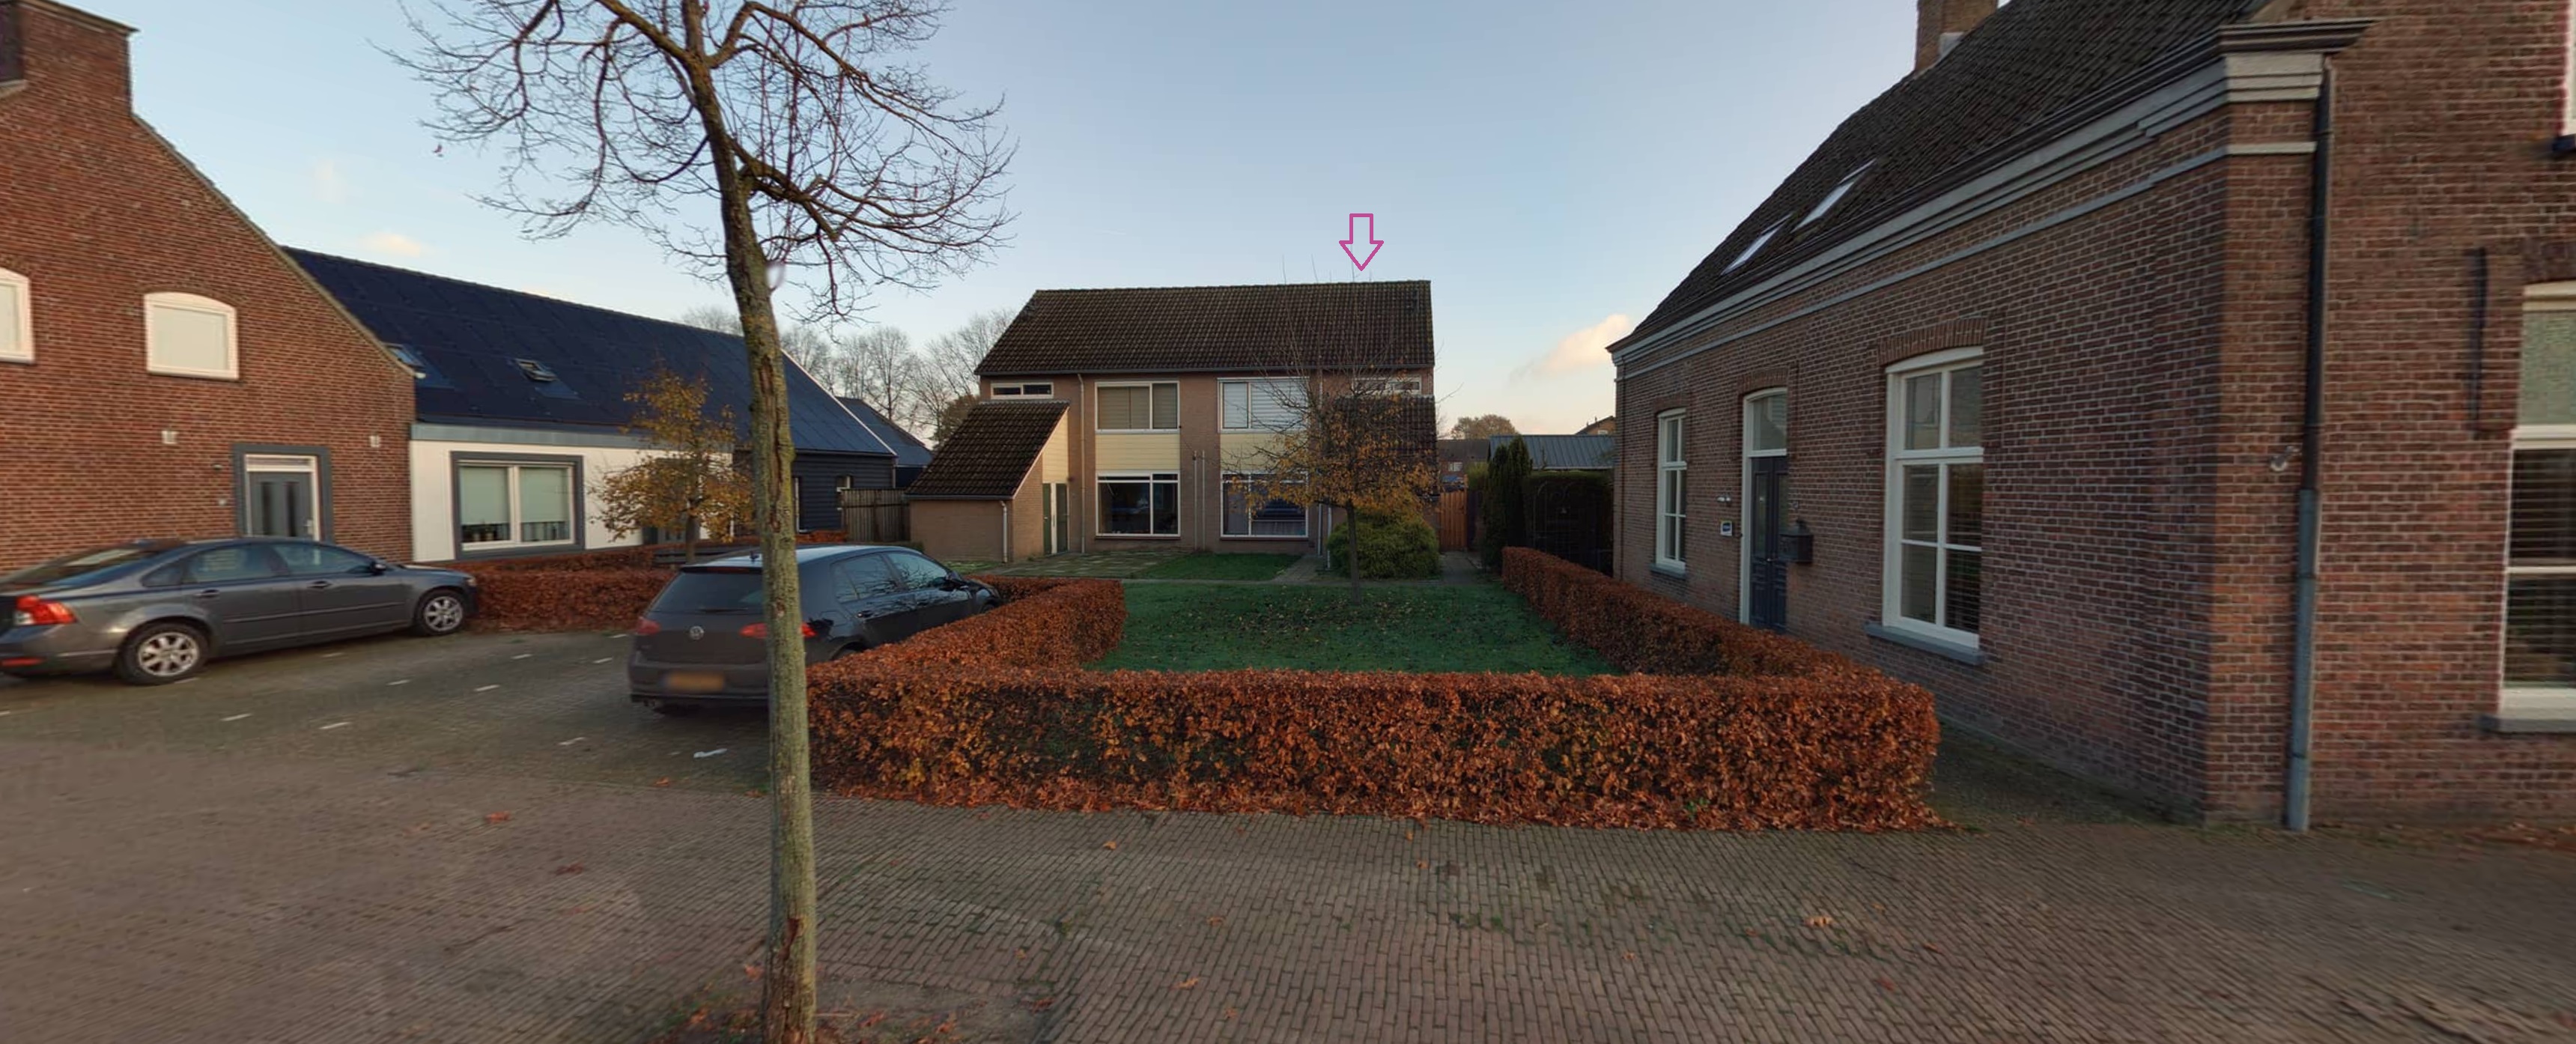 Grotestraat 33A, 5841 AA Oploo, Nederland